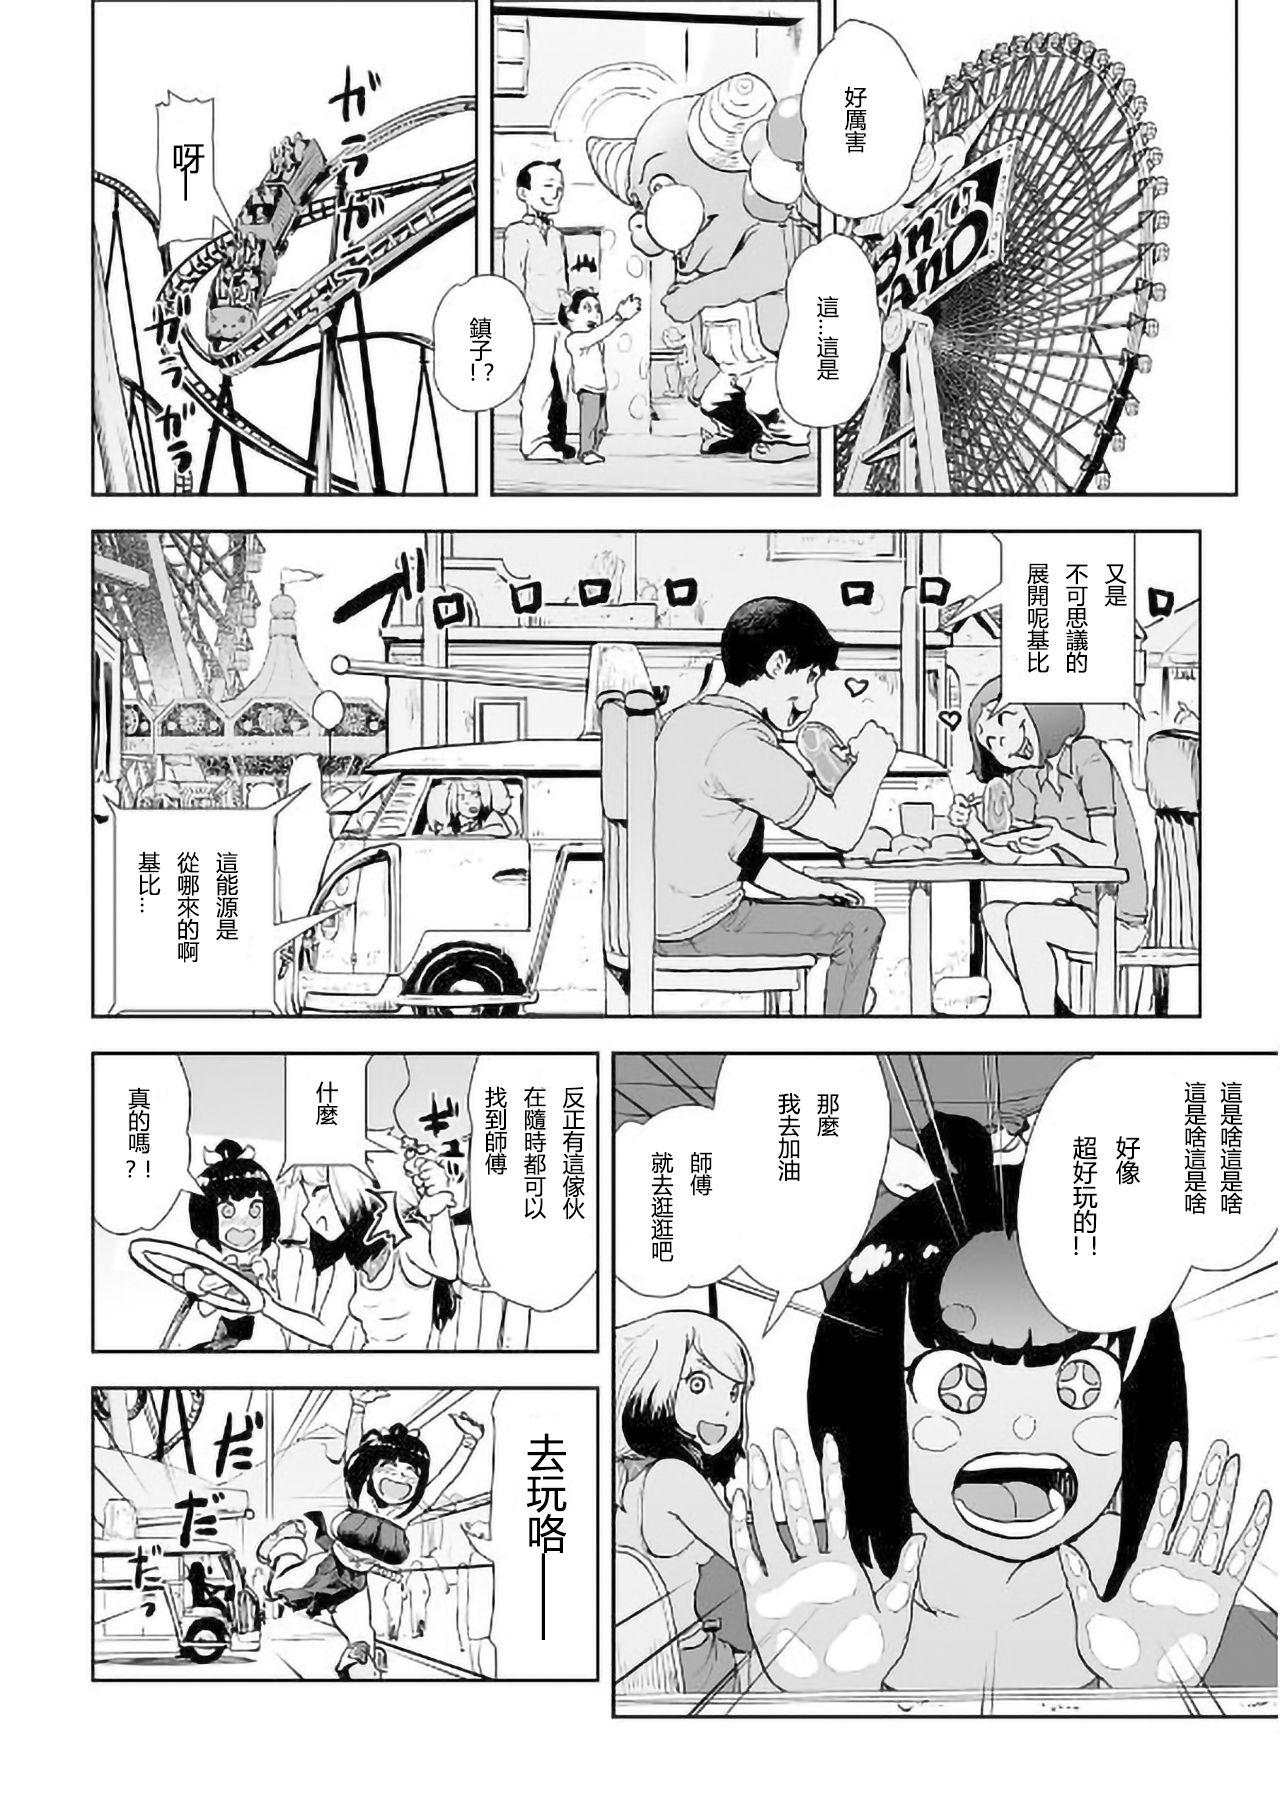 Spooning MOMO! Daiyonwa Youkoso Oniland no Maki Bear - Page 7